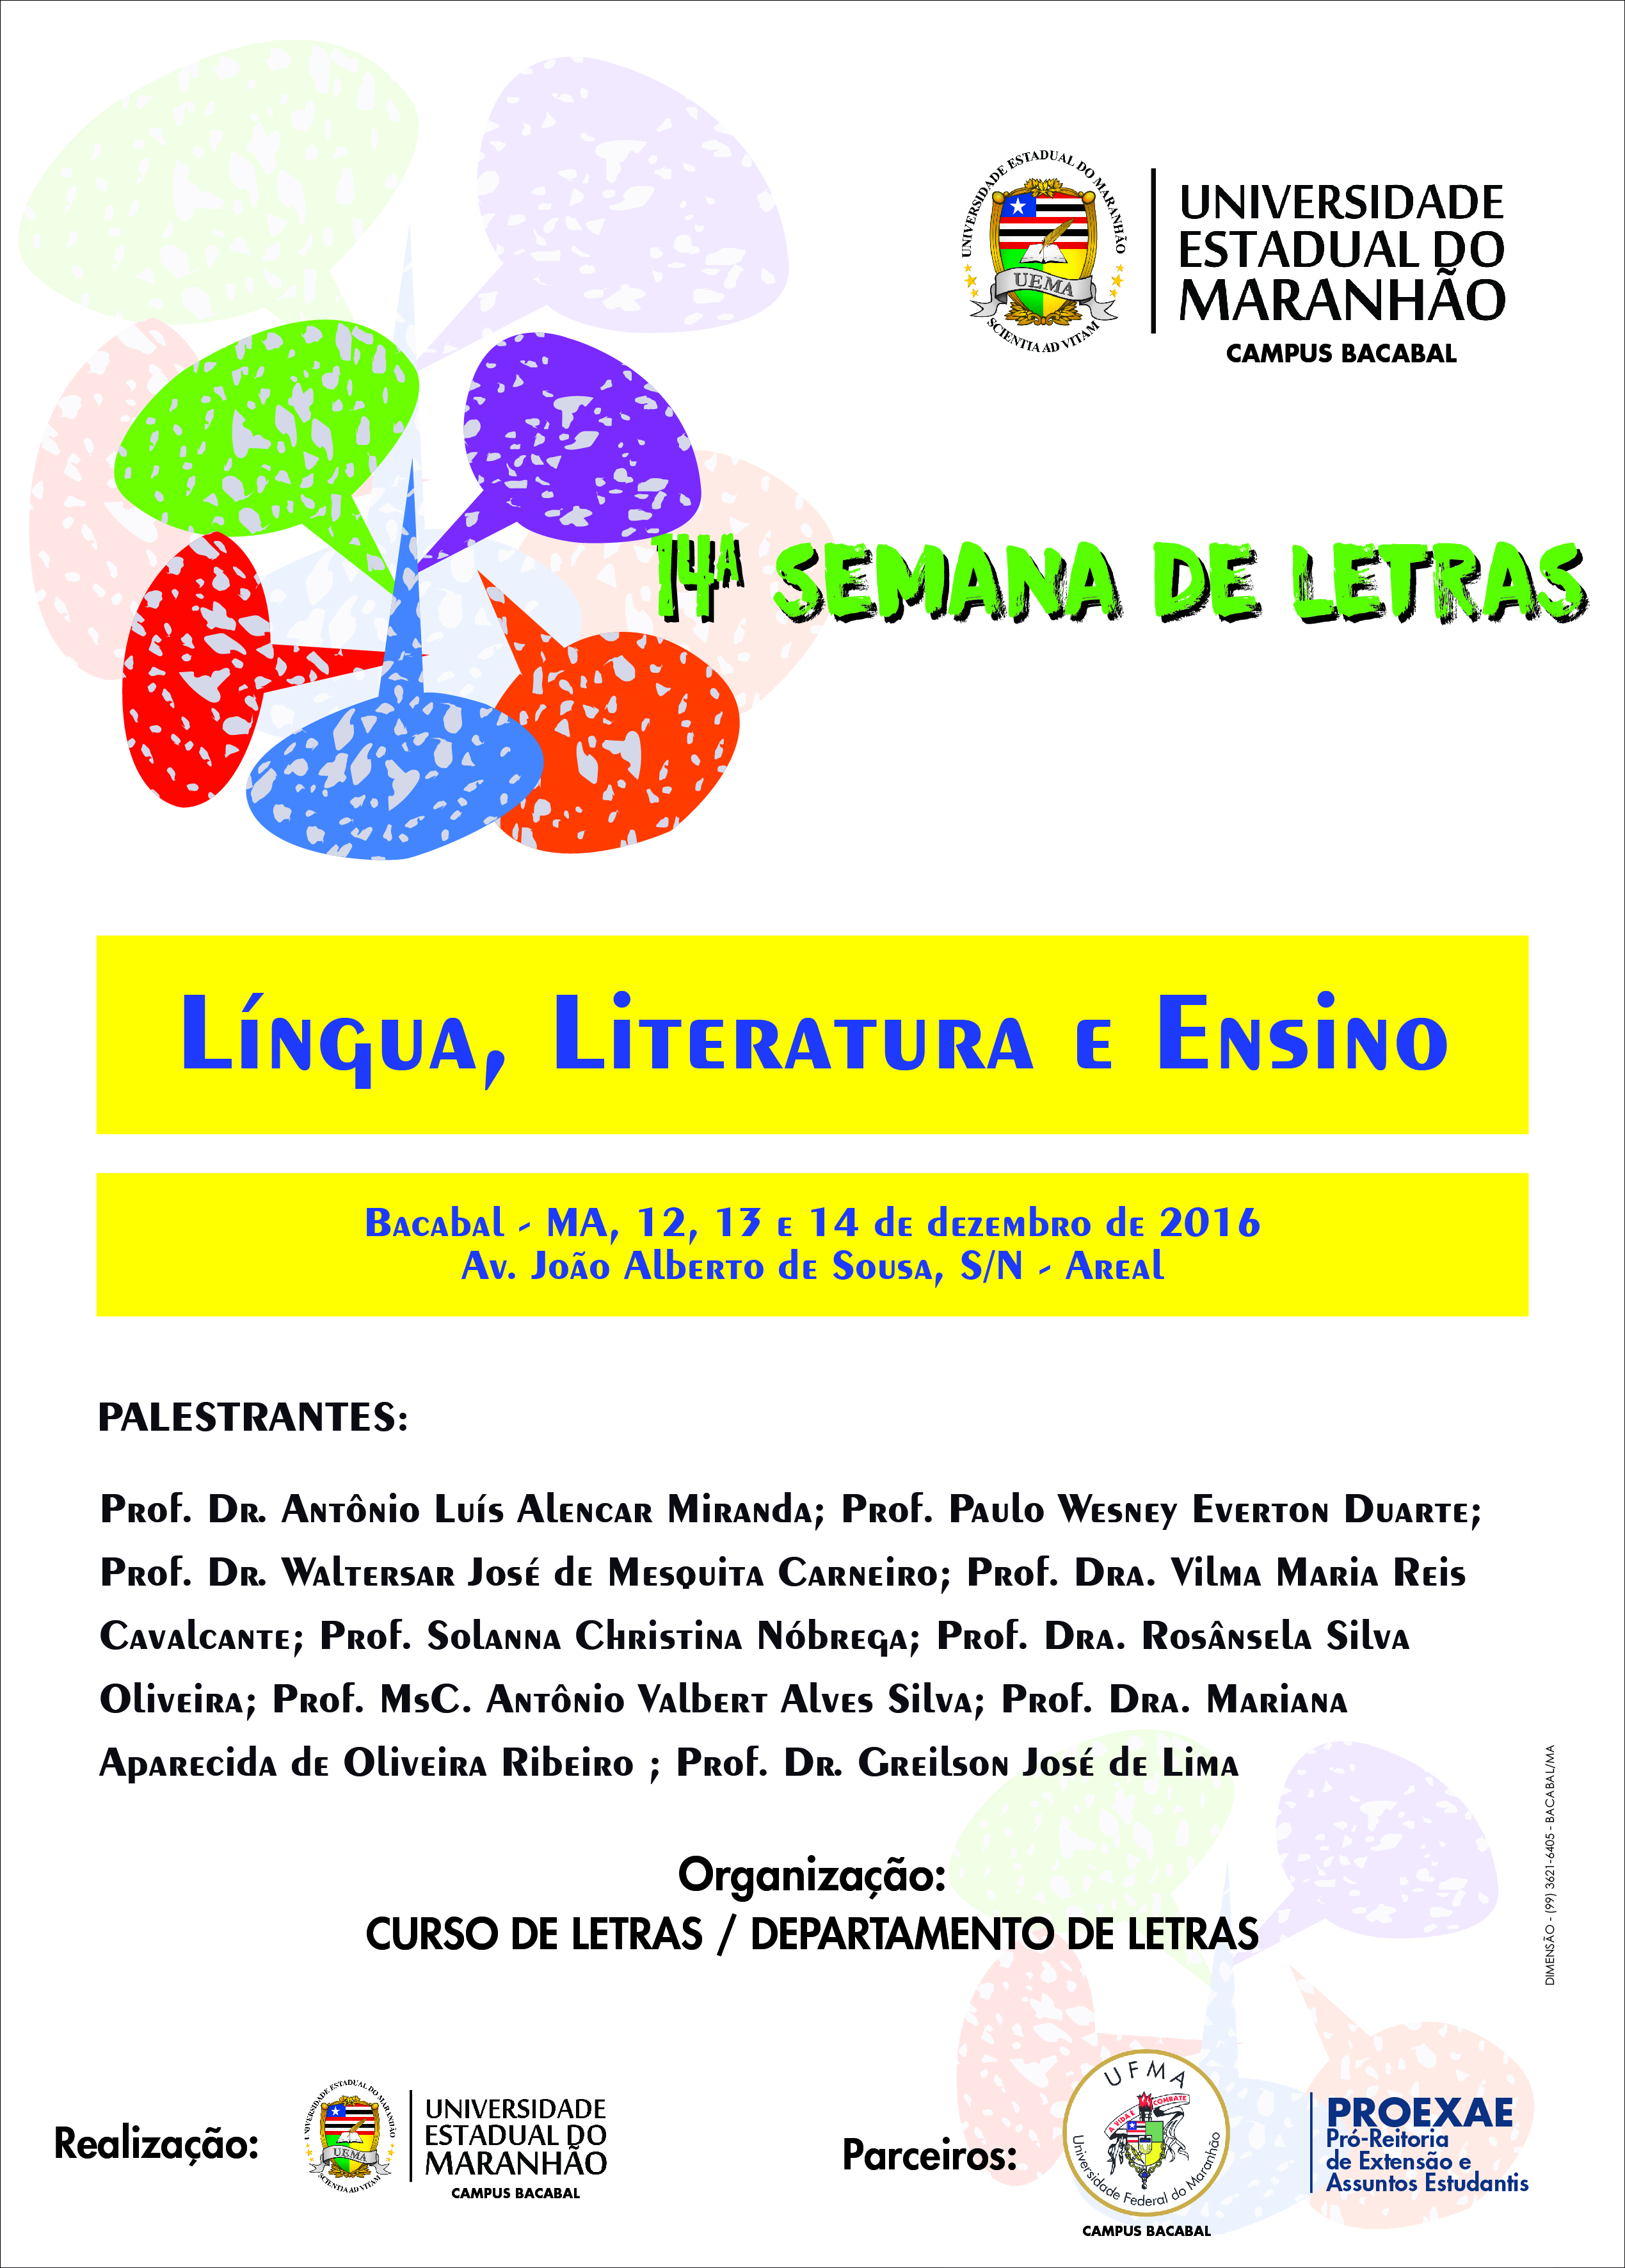 Campus Bacabal realiza 14ª Semana de Letras na próxima semana